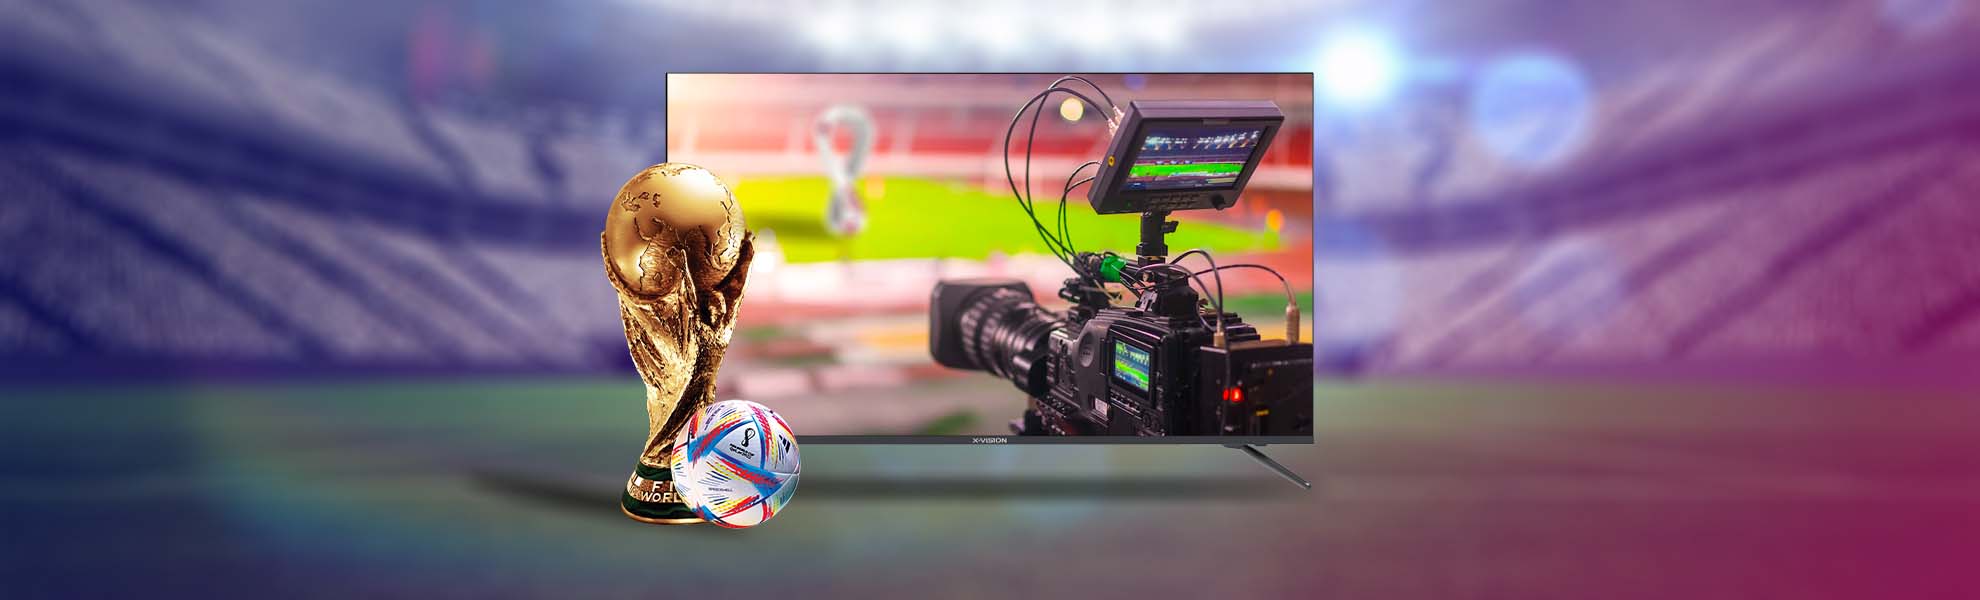 ⚽ شکار لحظه ها با دوربین های فیلمبرداری جام جهانی فوتبال 2022 قطر